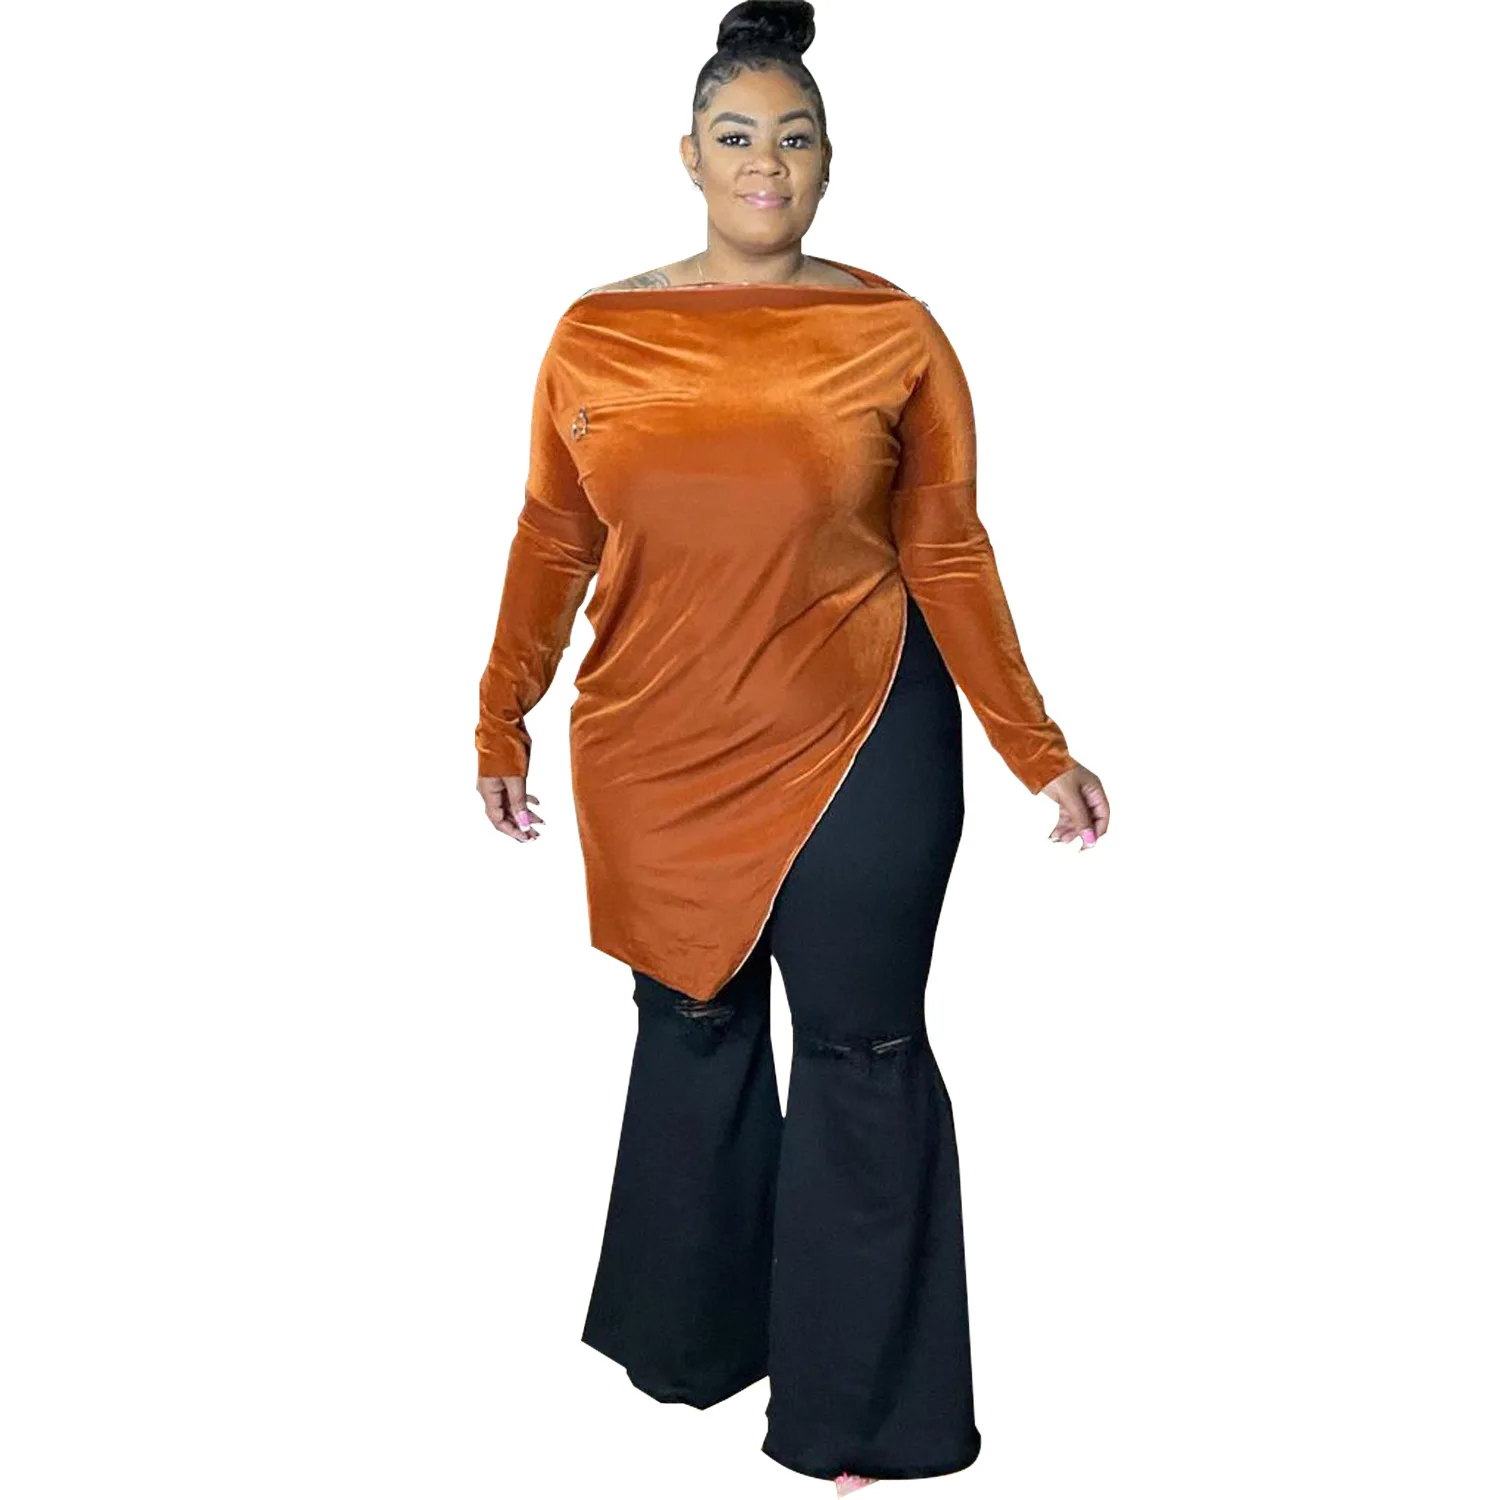 

Large Size Women Top Square Shoulder Zipper Velvet Surface Women Clothing Plus Size Top 2021 New Autumn Urban Casual Soild Color